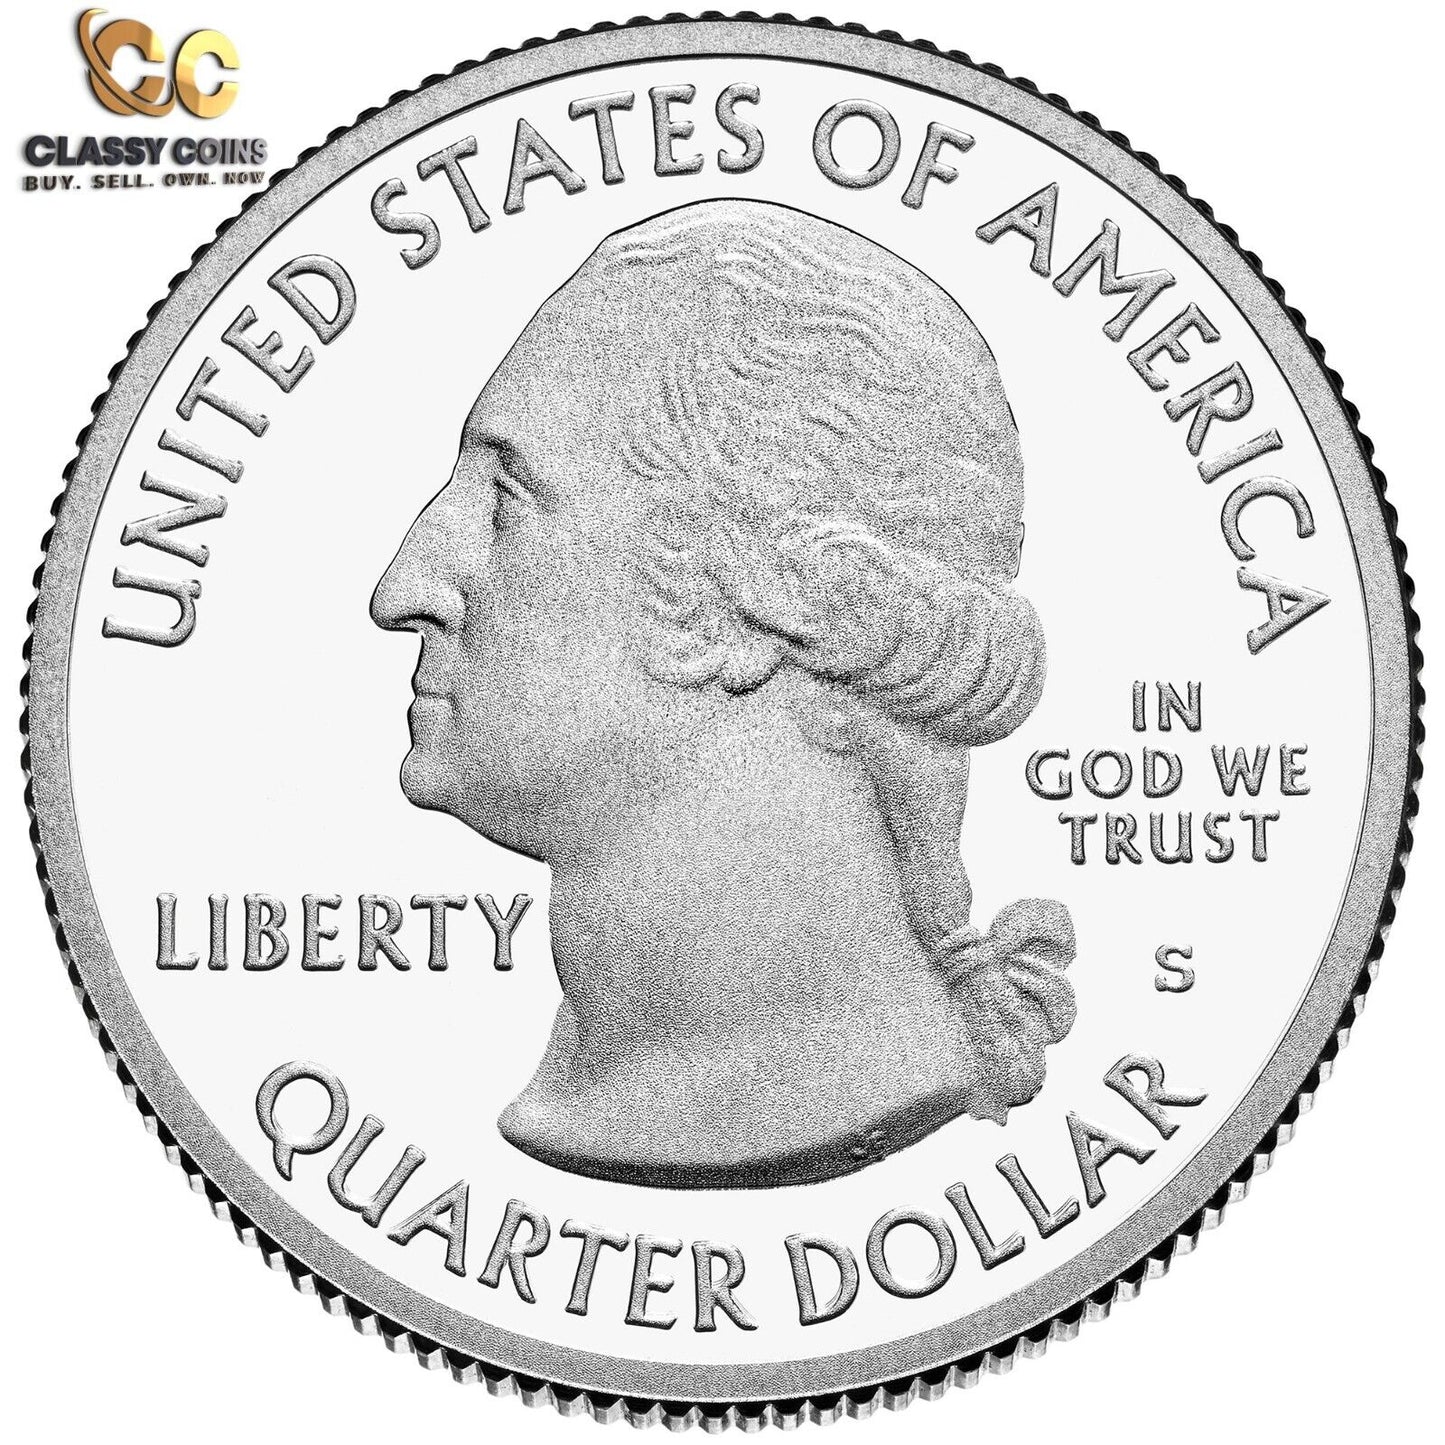 2020 S Proof Silver American Samoa ATB Quarter ☆☆ .999 Fine Silver